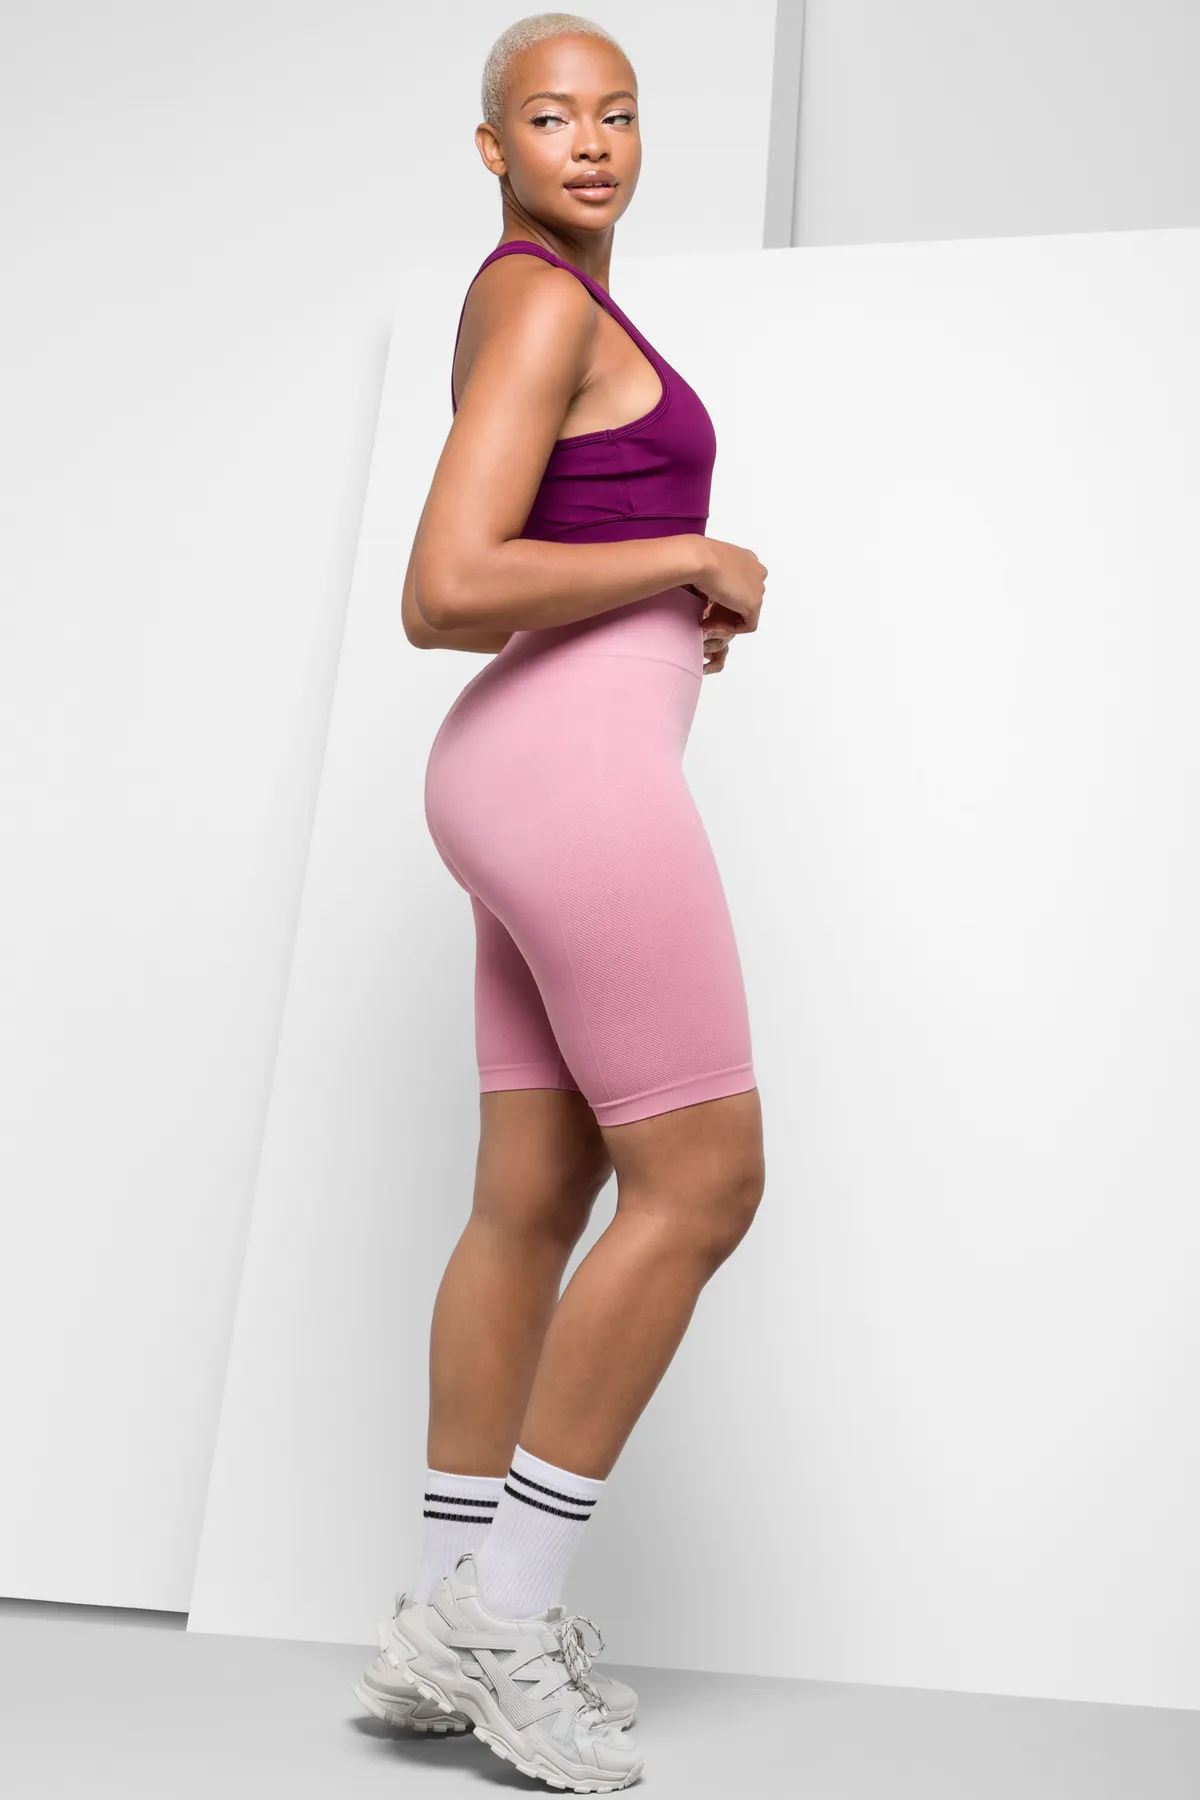 Seamfree cycle shorts pink - Women's Activewear Shorts